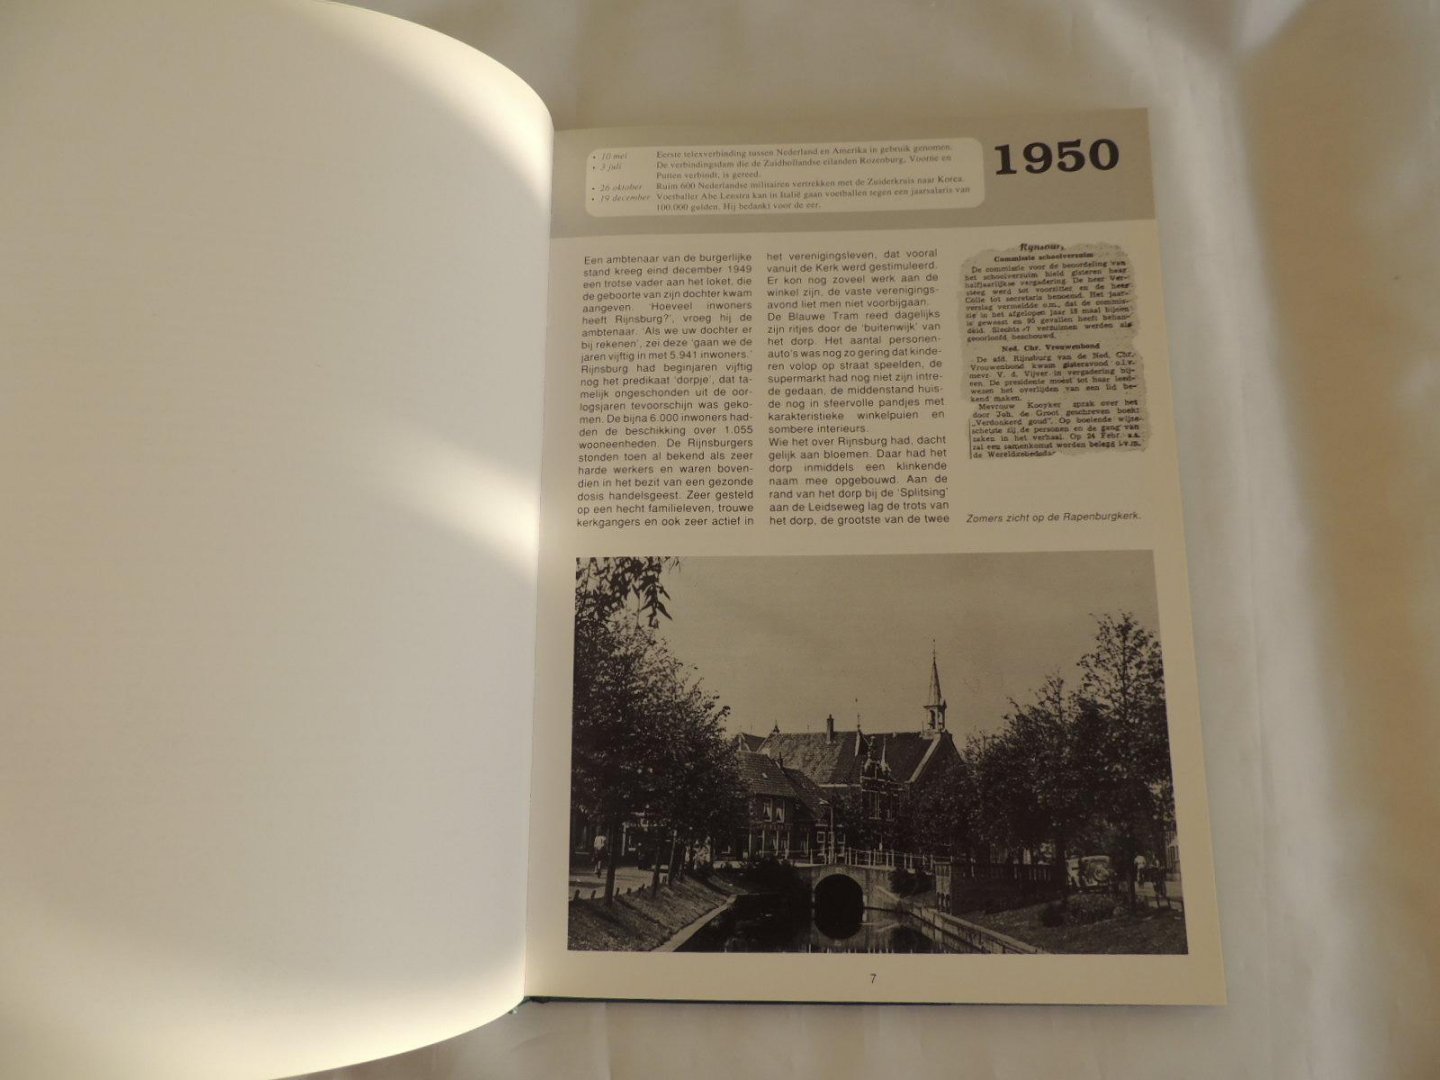 VINK, M - Rijnsburg de jaren vijftig 50 - 1950 - 1960